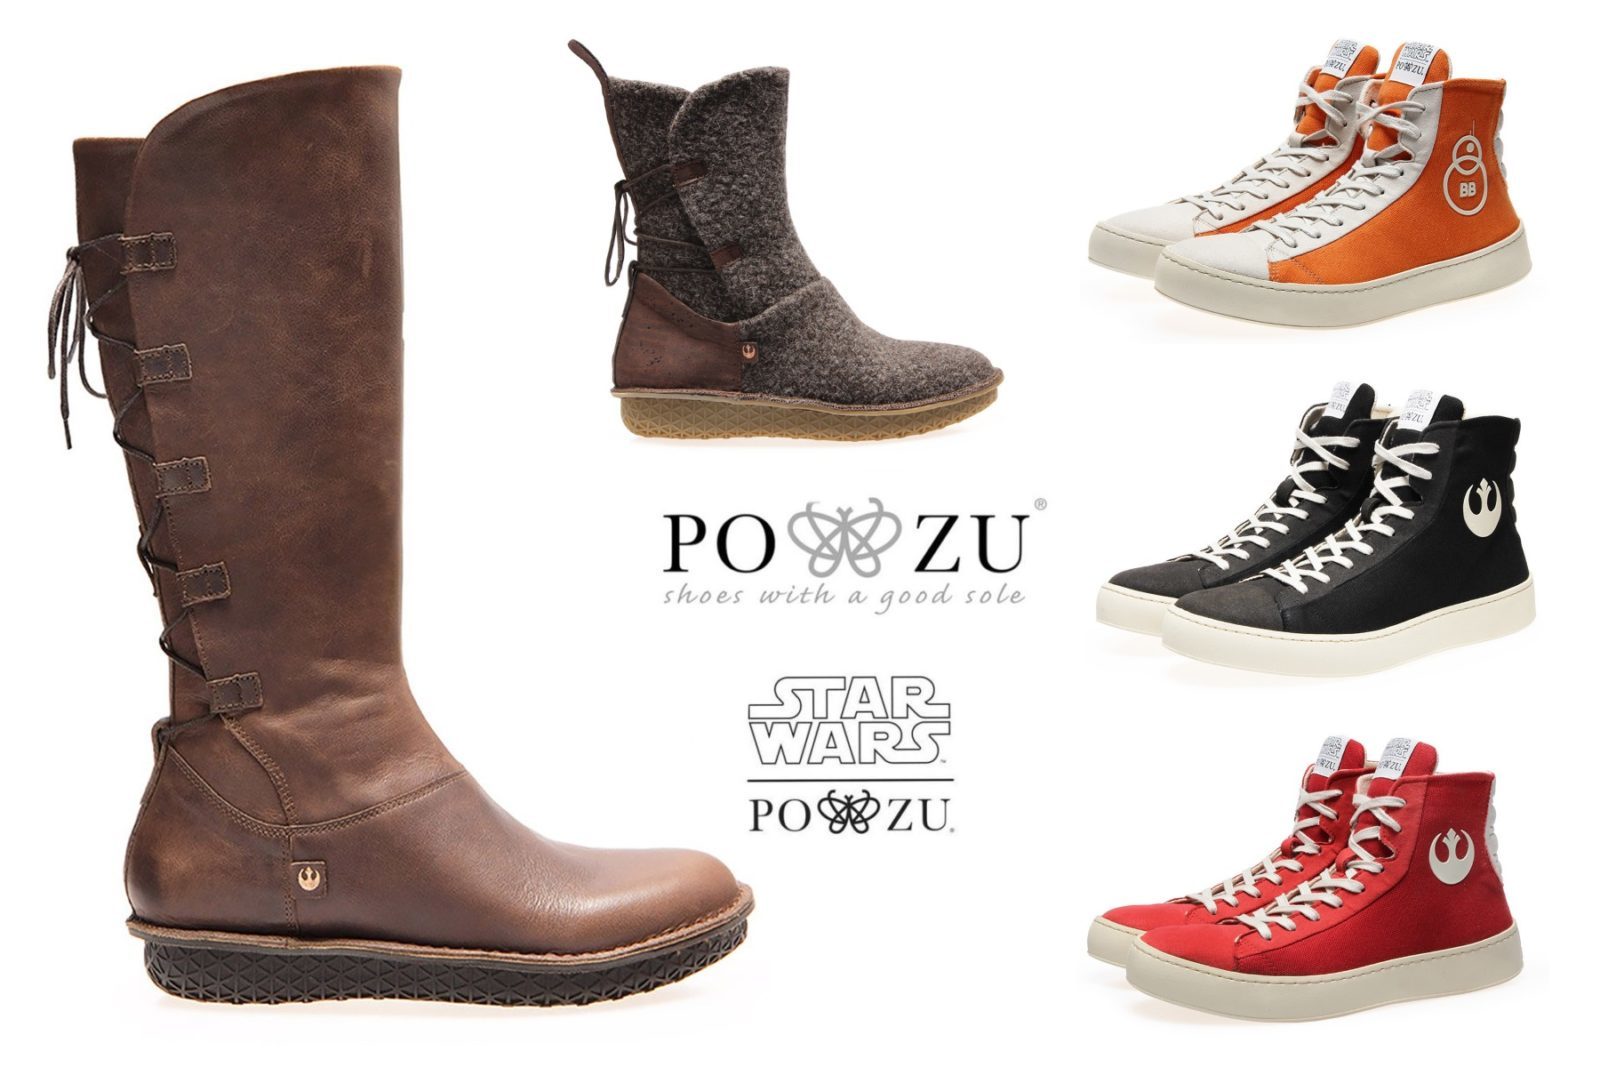 Get £20 Off Po-Zu x Star Wars Footwear